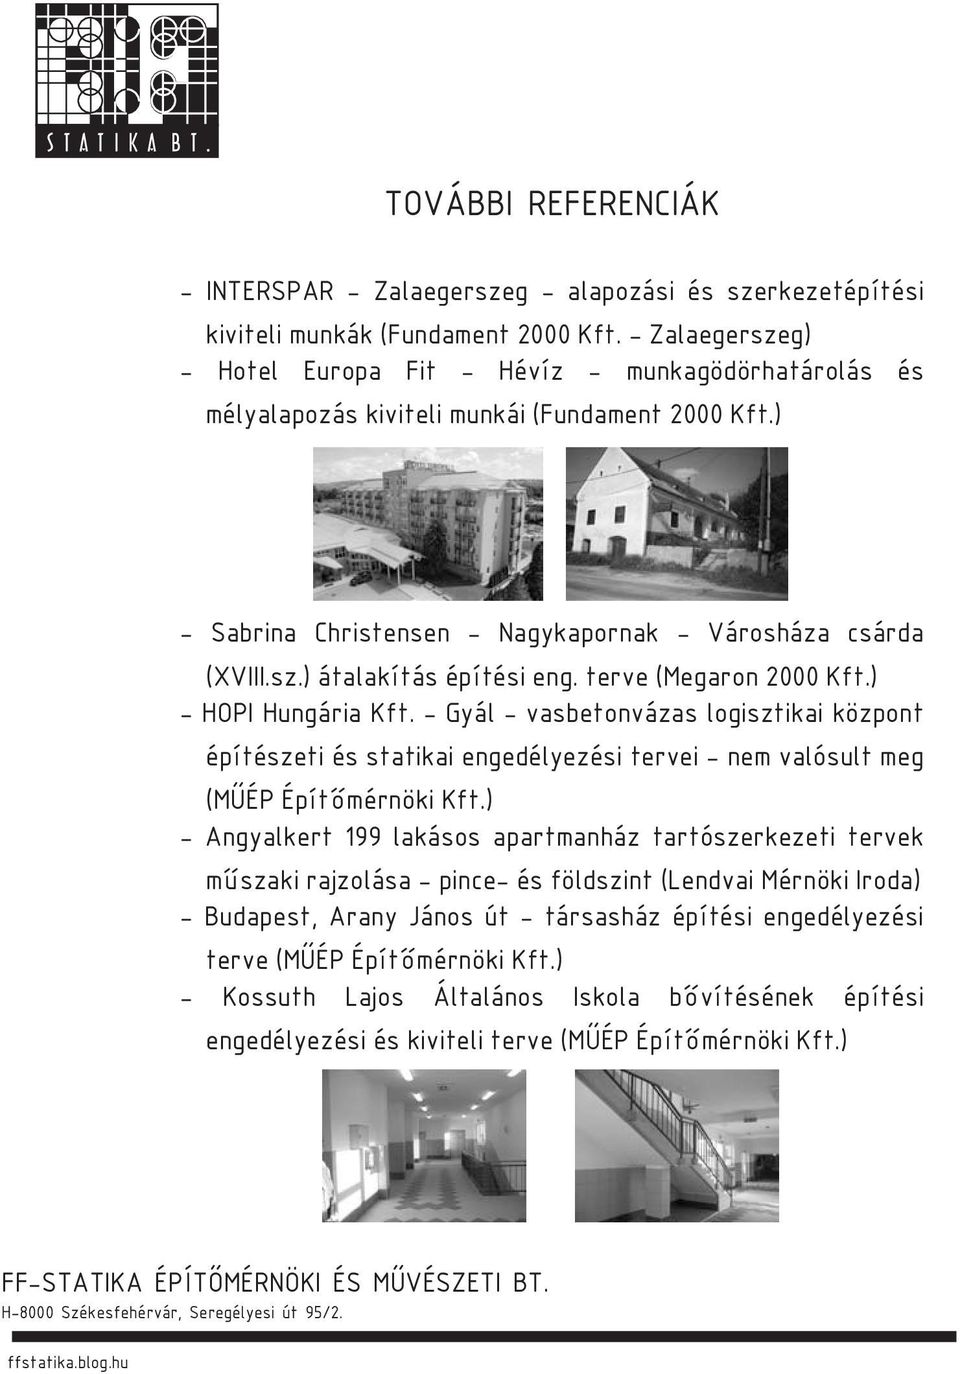 terve (Megaron 2000 Kft.) - HOPI Hungária Kft. - Gyál - vasbetonvázas logisztikai központ építészeti és statikai engedélyezési tervei - nem valósult meg (MŰÉP Építőmérnöki Kft.